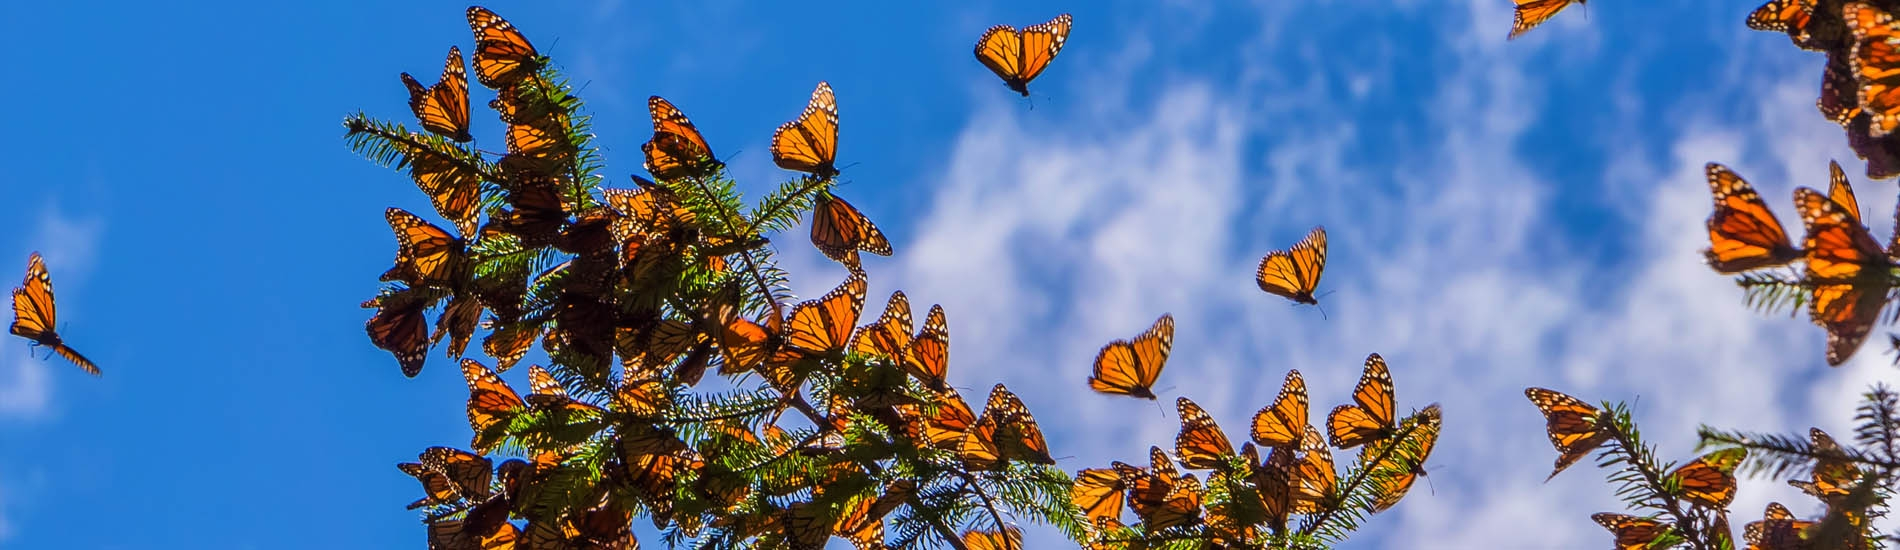 Valle de Bravo - Monarch butterflies view - Mexico